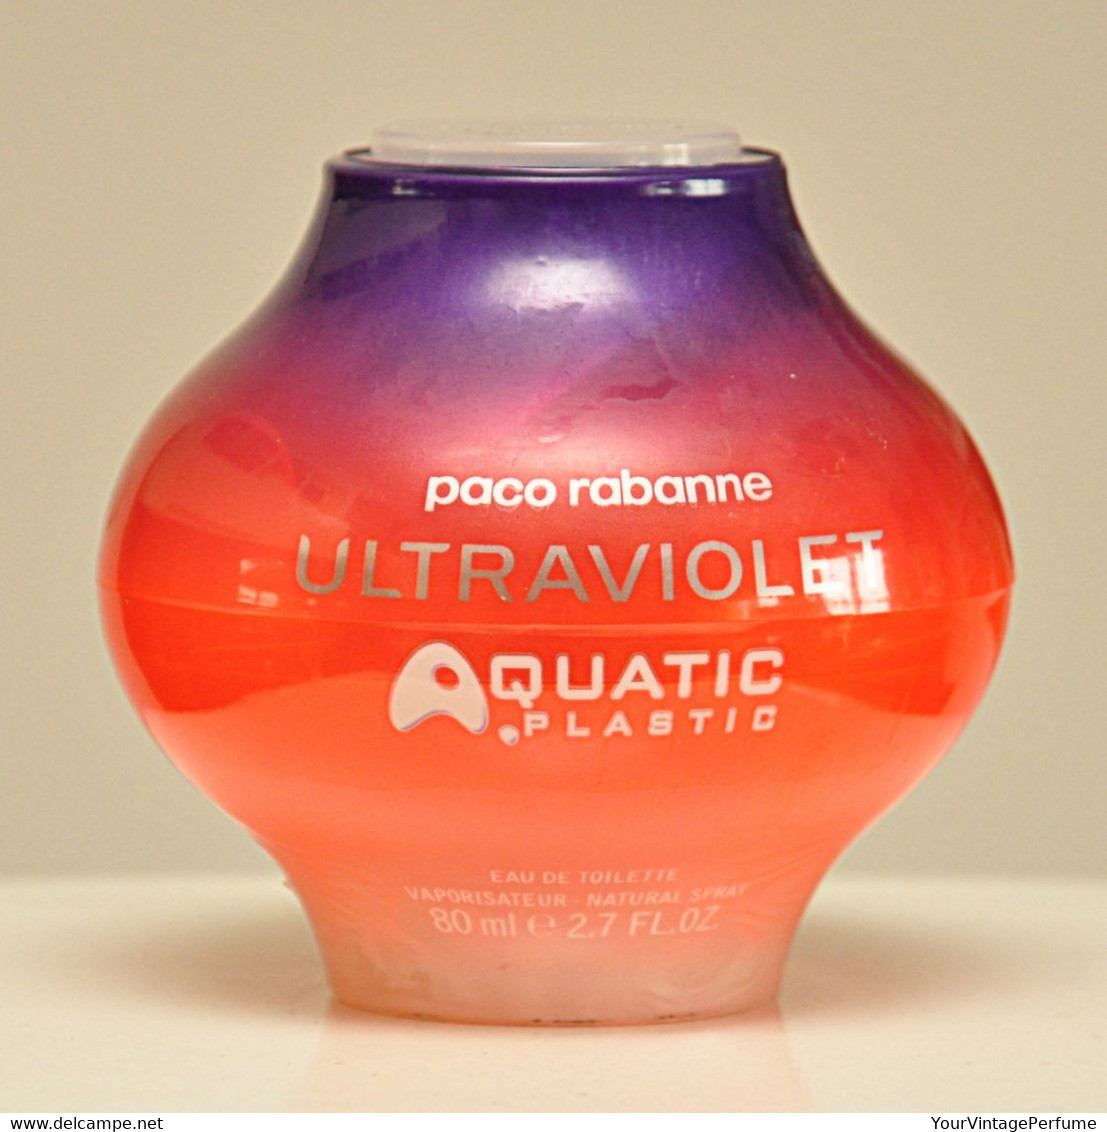 Paco Rabanne Ultraviolet Aquatic Plastic Eau De Toilette Edt 80ml 2.7 Fl. Oz. Spray Perfume For Woman Rare Vintage 2002 - Women